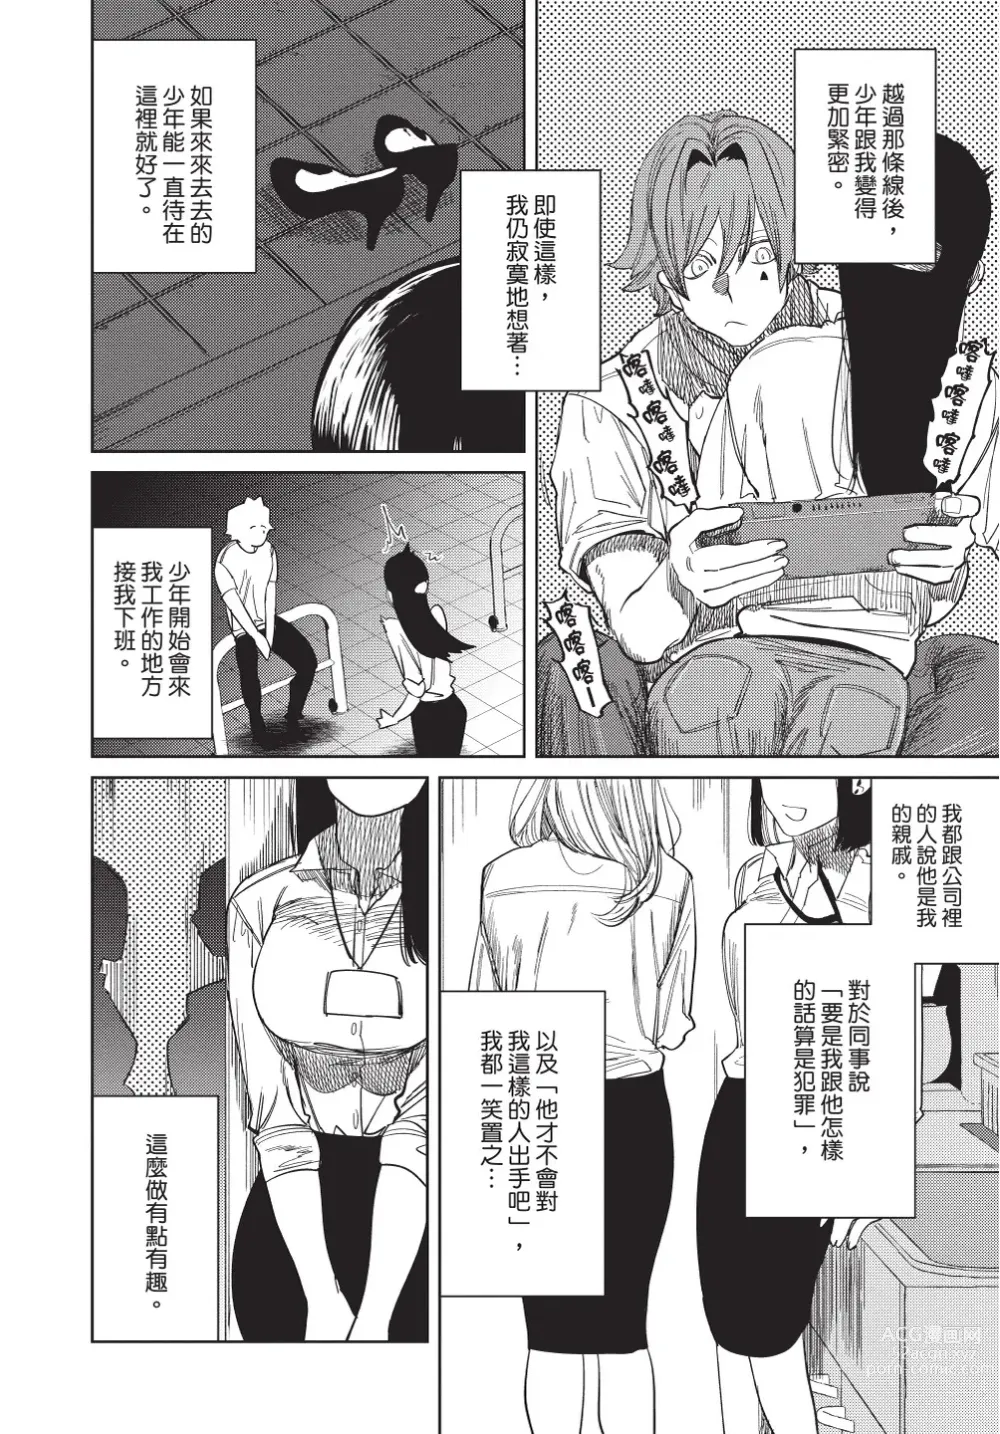 Page 212 of manga 在異世界旅途中拯救我的是一名少年殺手